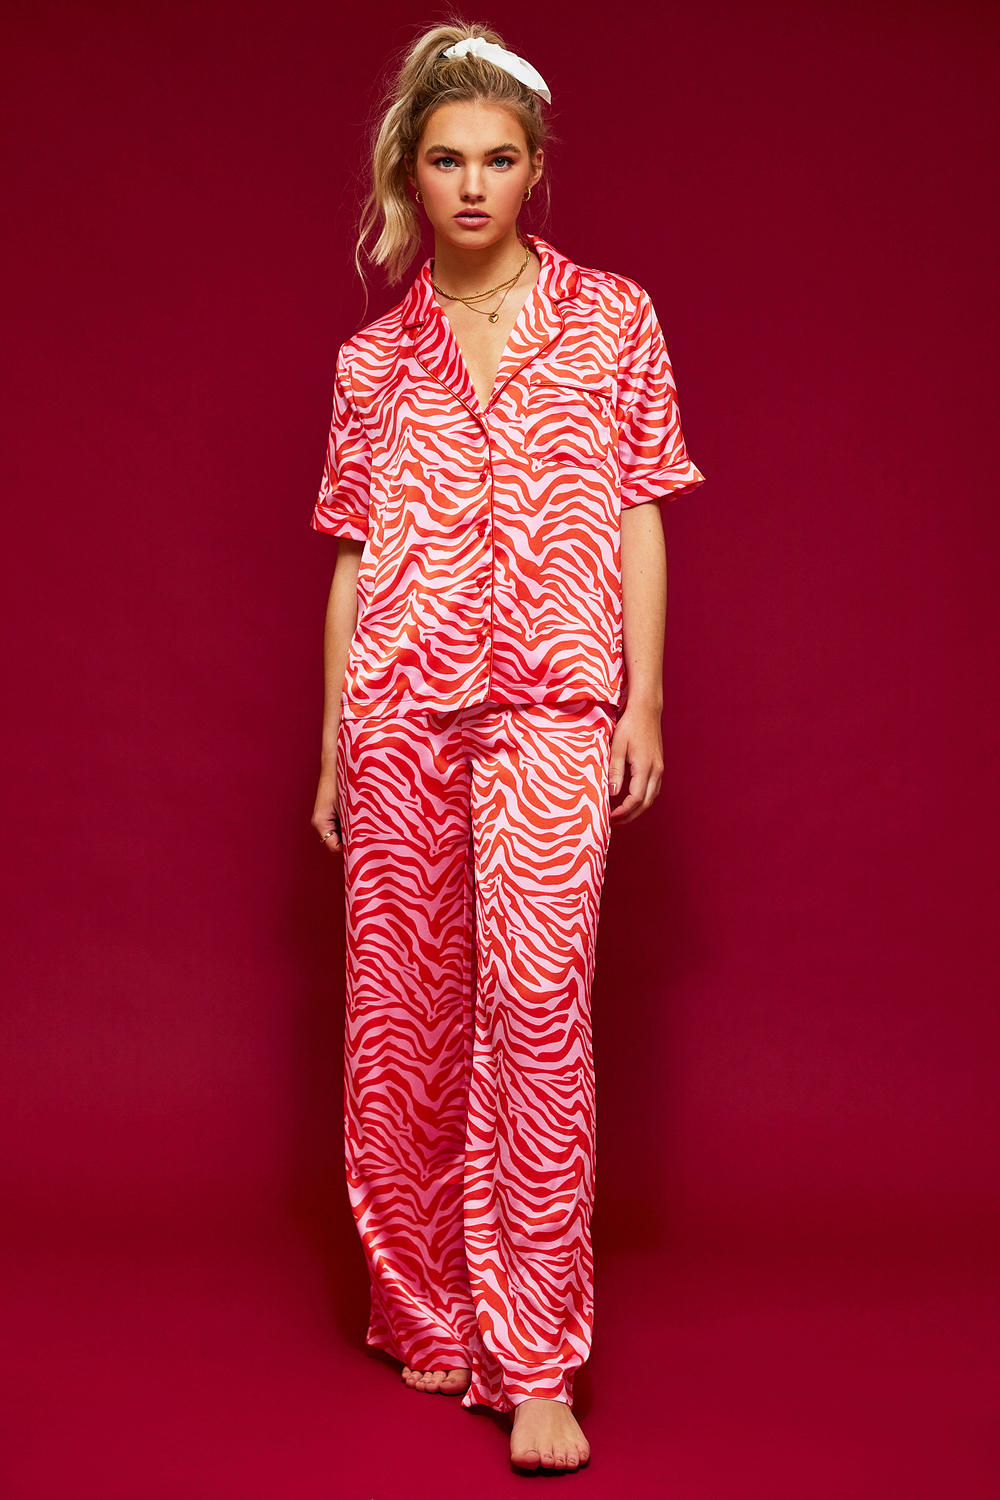 Pyjama trousers with zebra print